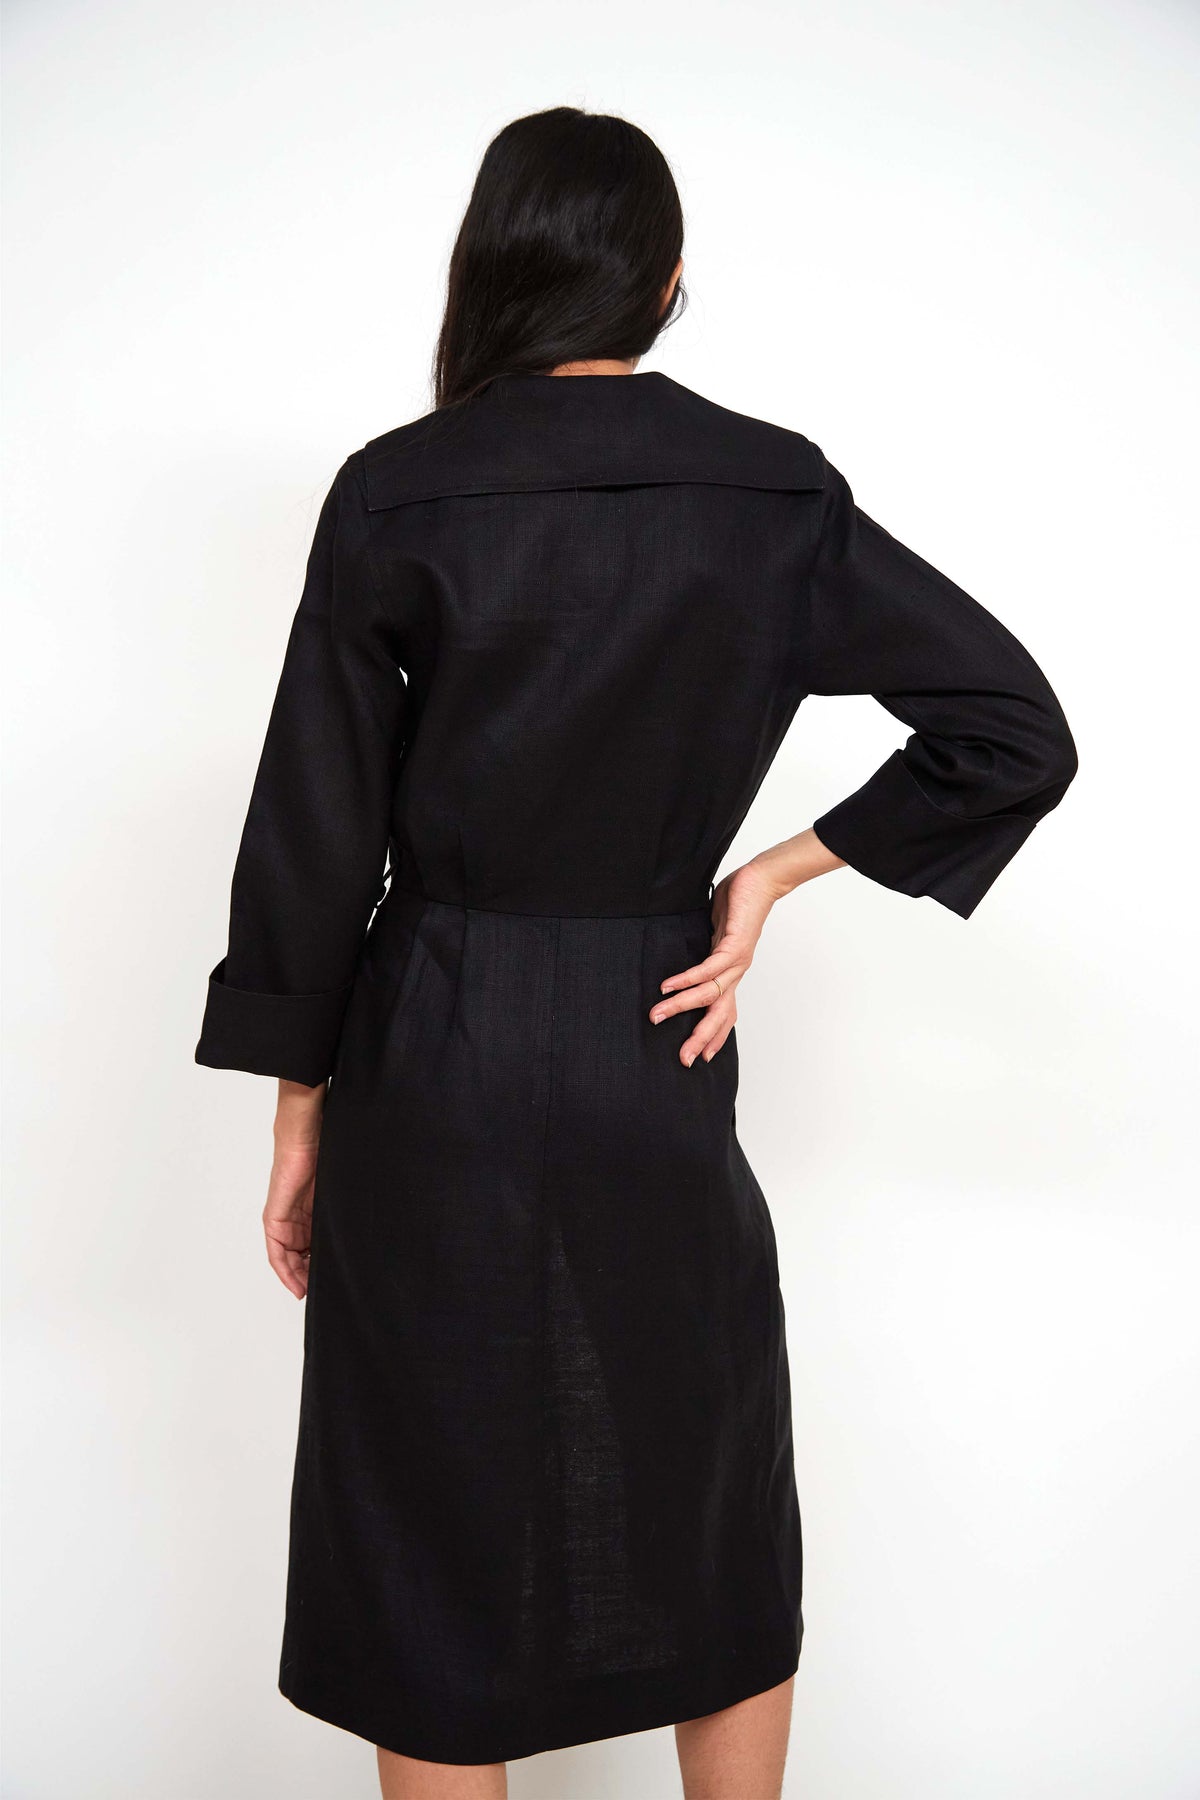 Yves Saint Laurent linen dress